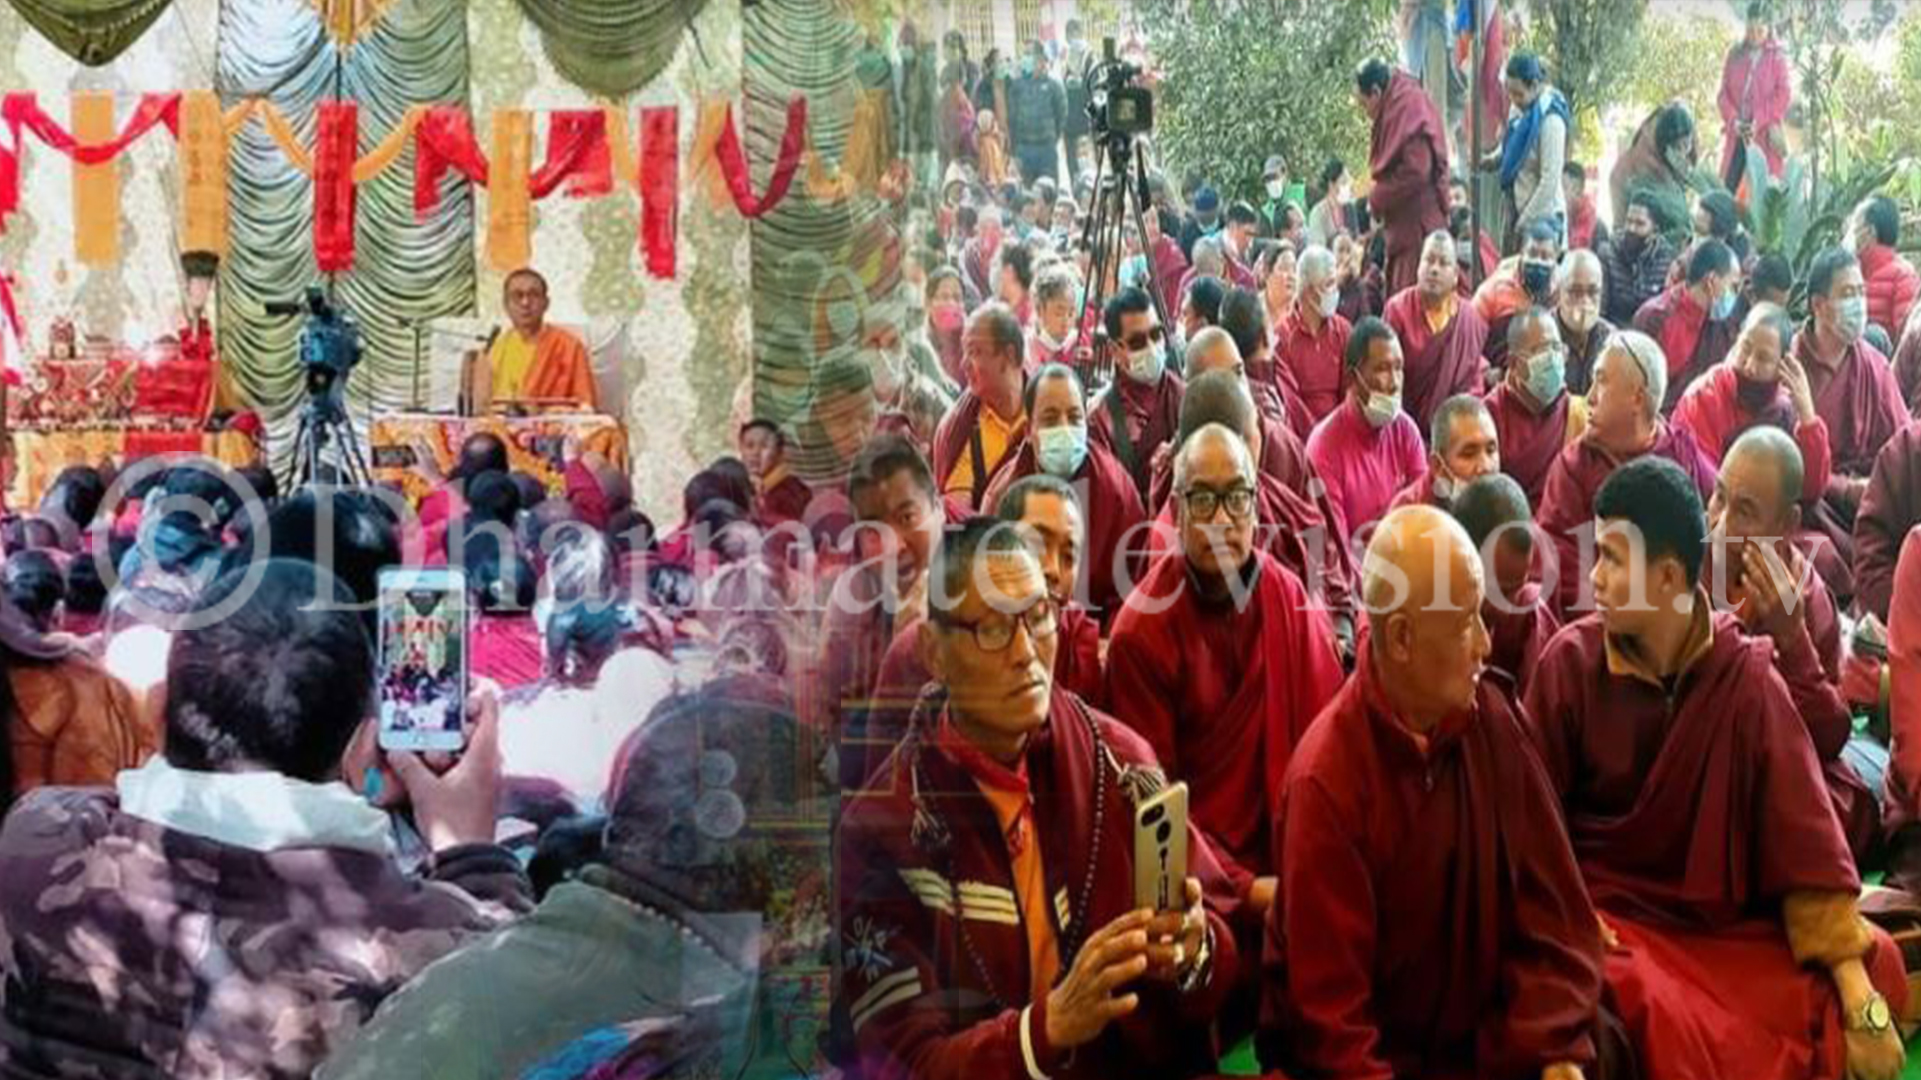 Nepal Mahayana Buddhist Manipa Sangh had organized one day of Phowa empowerment